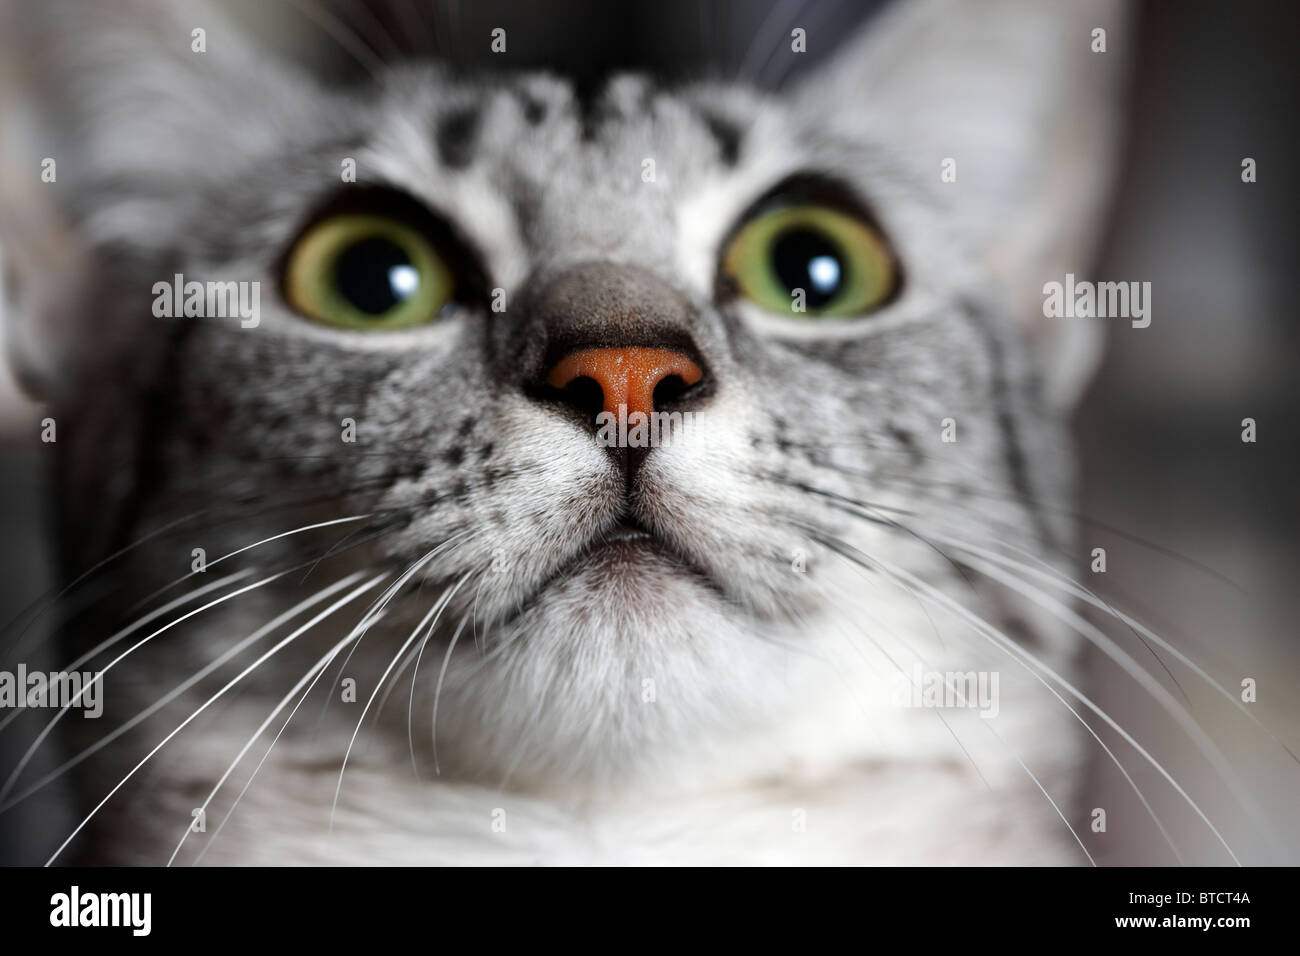 Mau égyptien chaton face closeup Banque D'Images